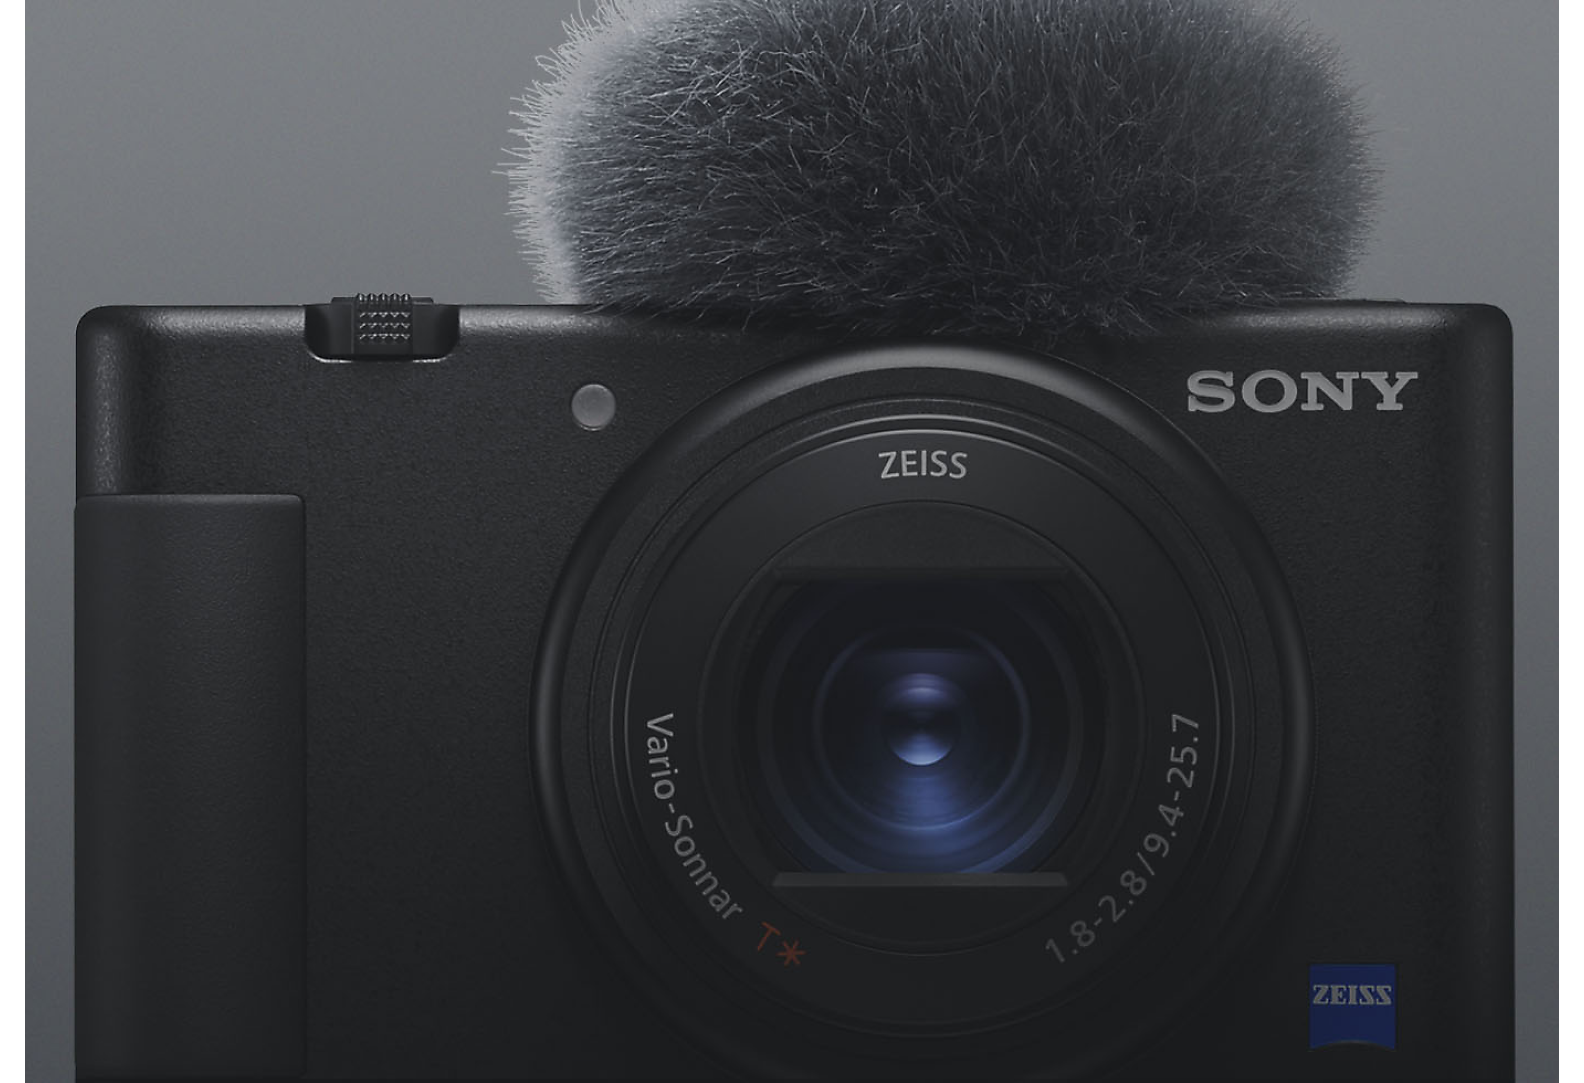 Εμπρόσθια όψη της φωτογραφικής μηχανής μικρού μεγέθους Sony με προσαρτημένο μικρόφωνο